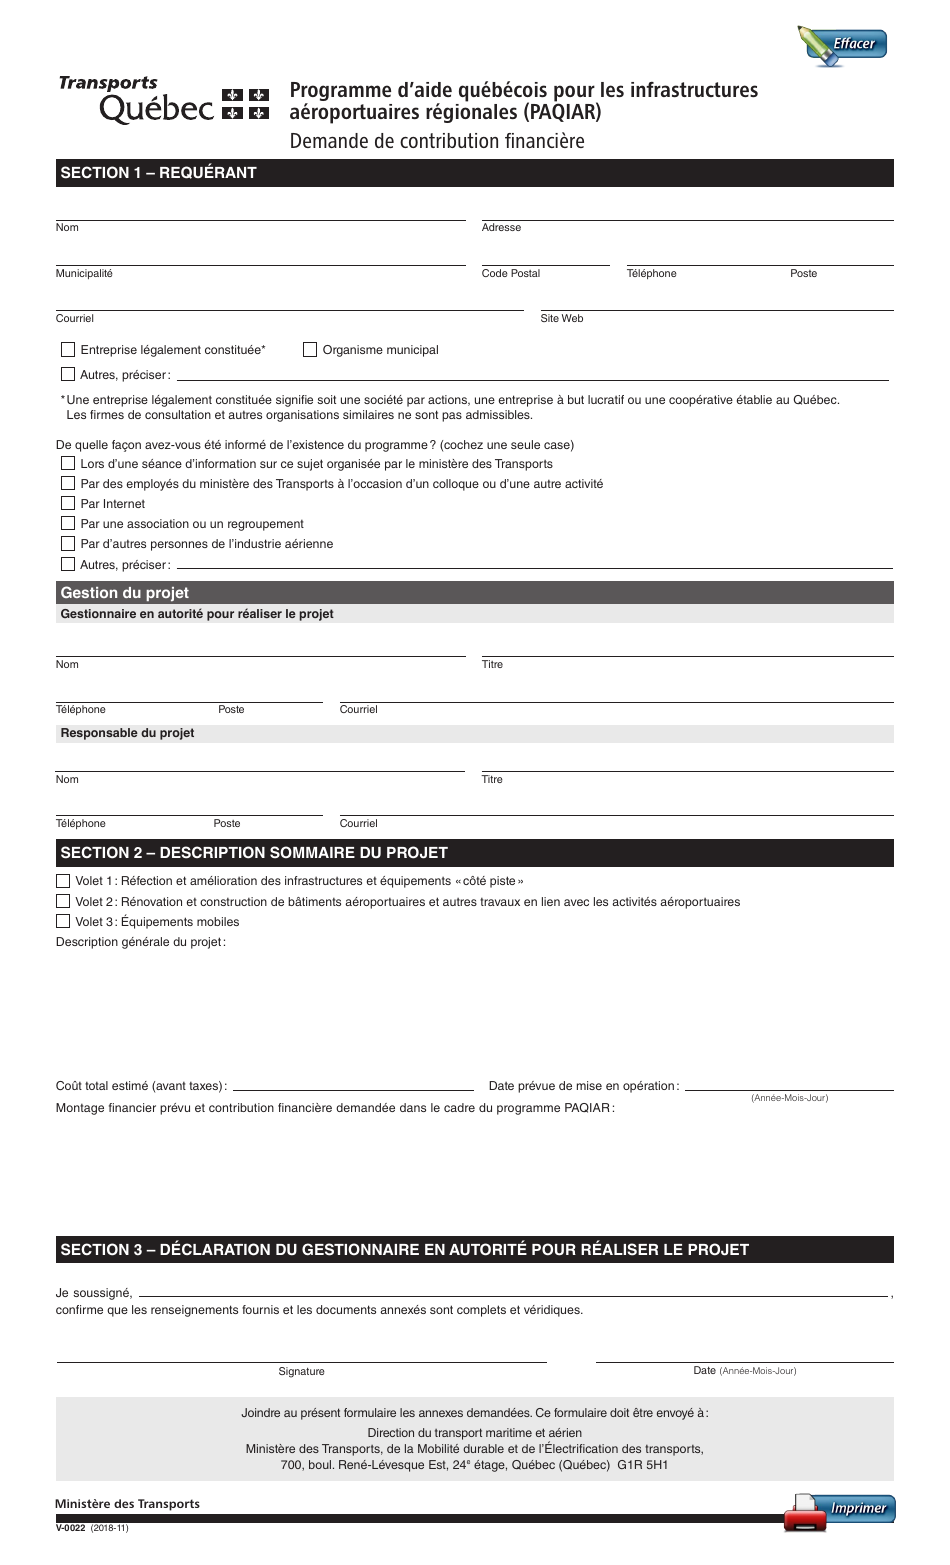 Forme V-0022 Programme Daide Quebecois Pour Les Infrastructures Aeroportuaires Regionales (Paqiar) Demande De Contribution Financiere - Quebec, Canada (French), Page 1